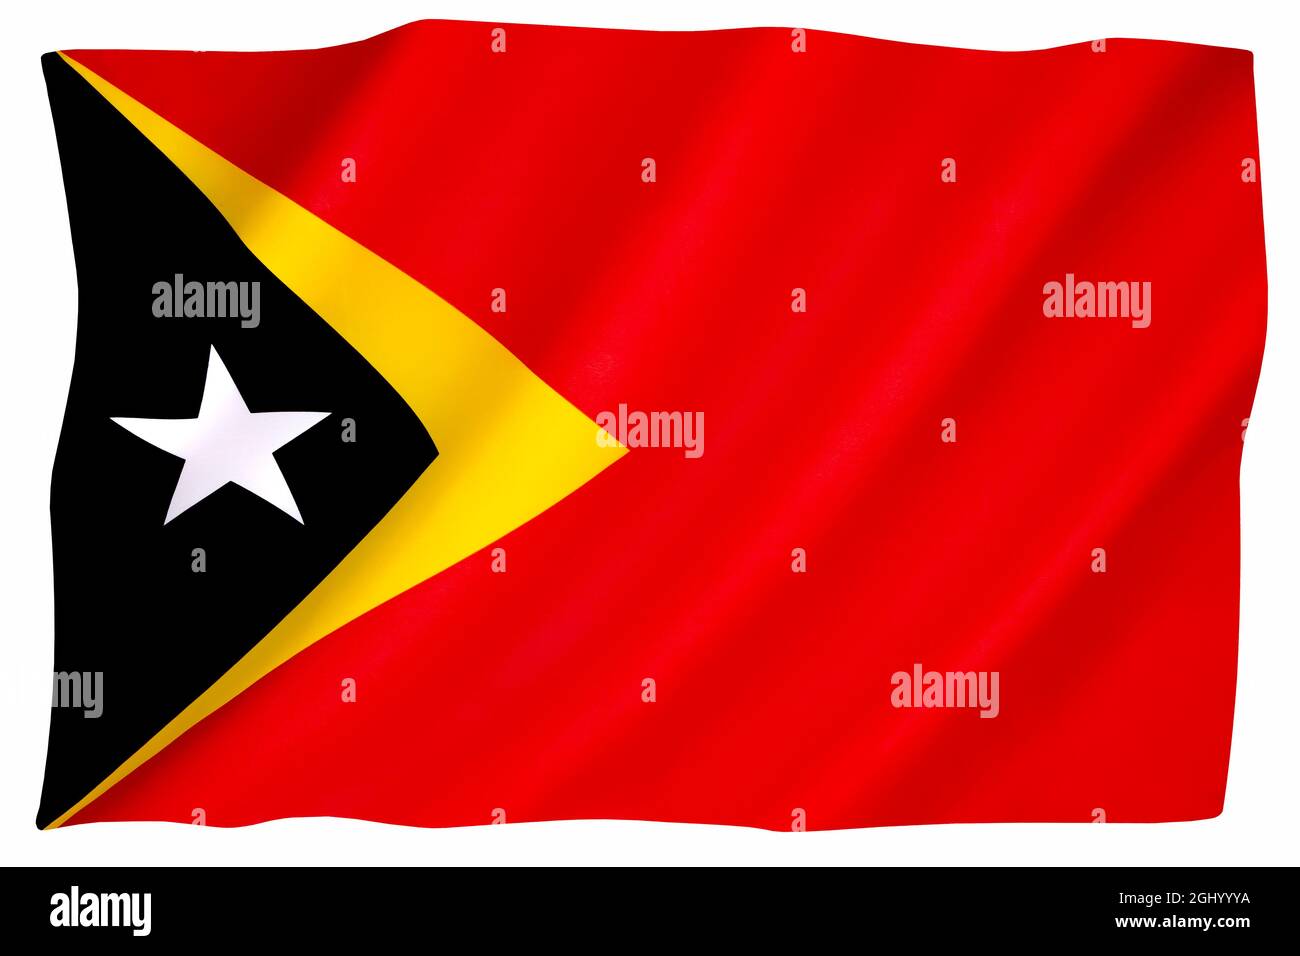 Flagge der Demokratischen Republik Timor-Leste - um Mitternacht am 19. Mai 2002 und während der ersten Momente des Unabhängigkeitstages, dem 20. Mai, die Vereinigten Staaten Stockfoto